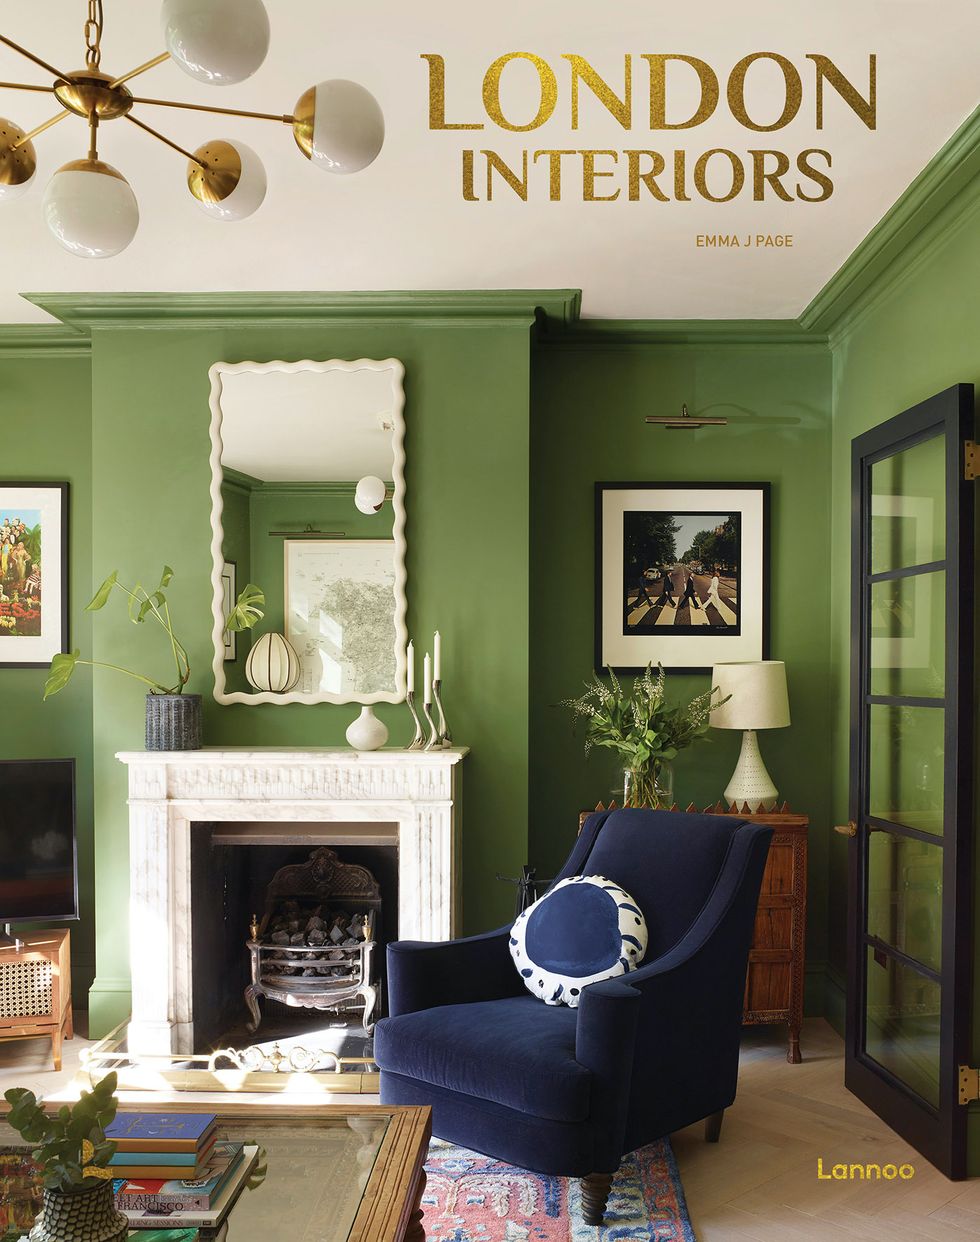 Best Interior Design Books to Buy in 2023 - Our Favorite Designer